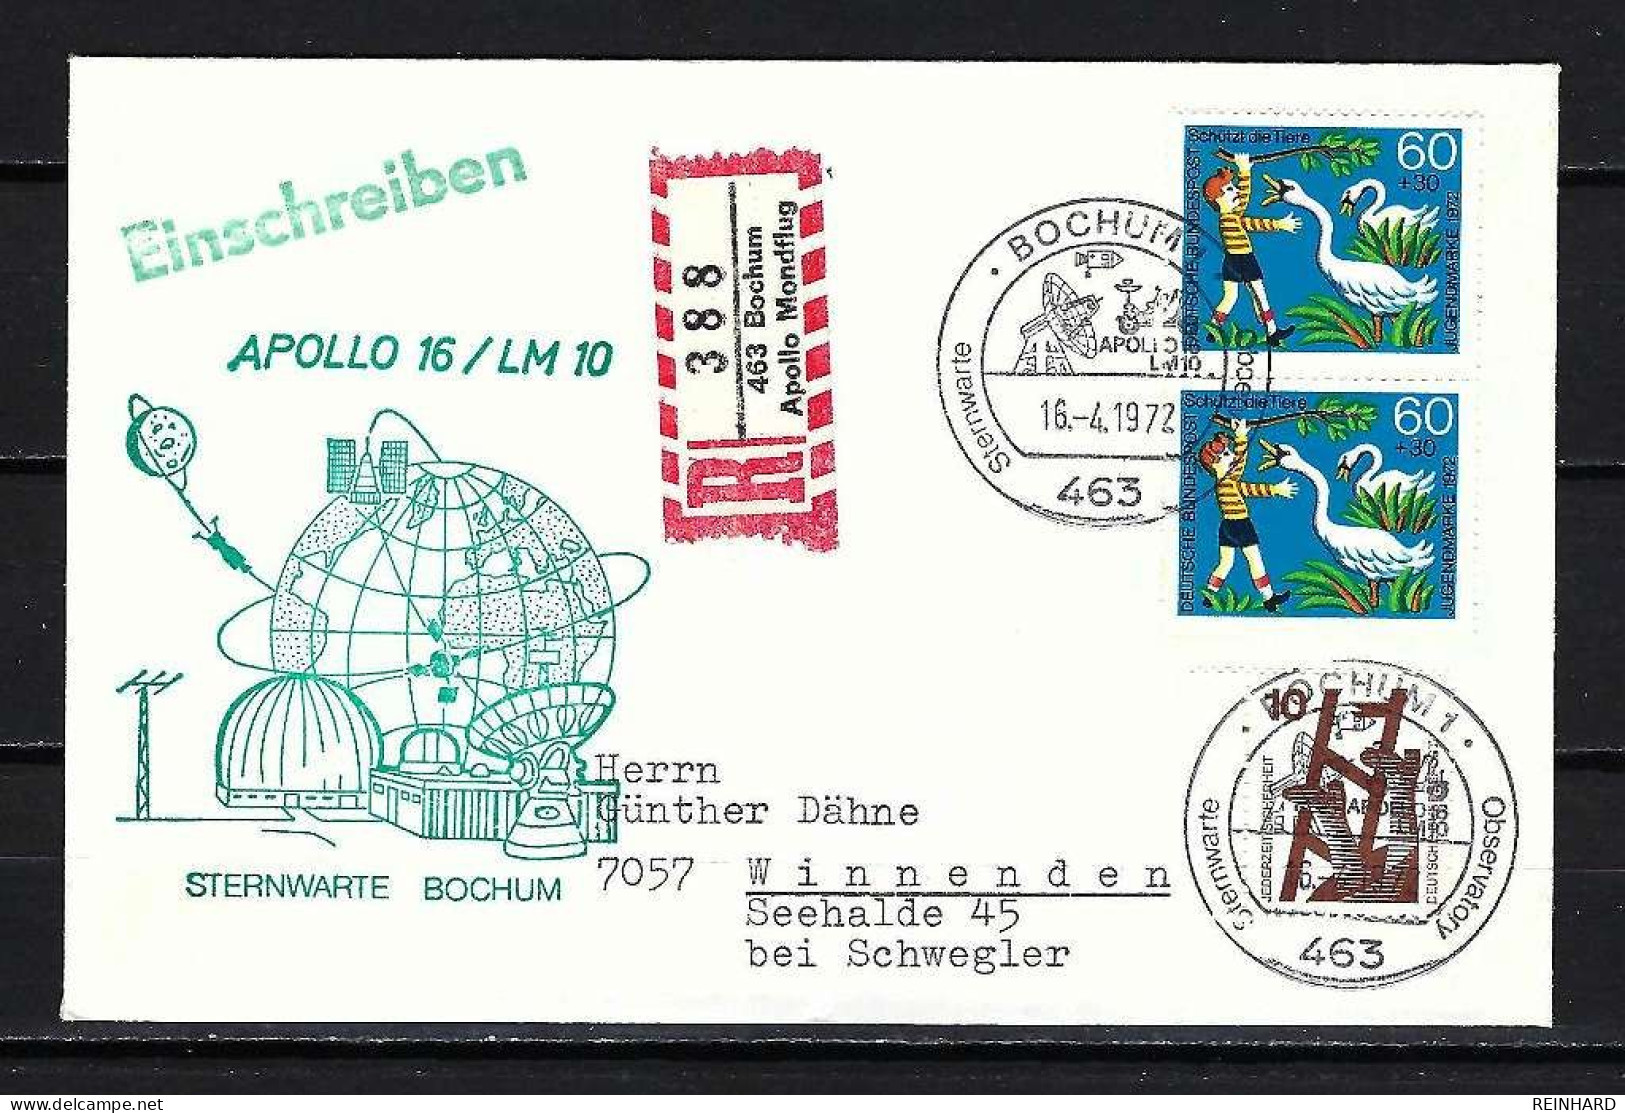 BUND Beleg Sternwarte Bochum Apollo 16/ LM 10 Stempel 16.4.1972 - Siehe Bild - Europa